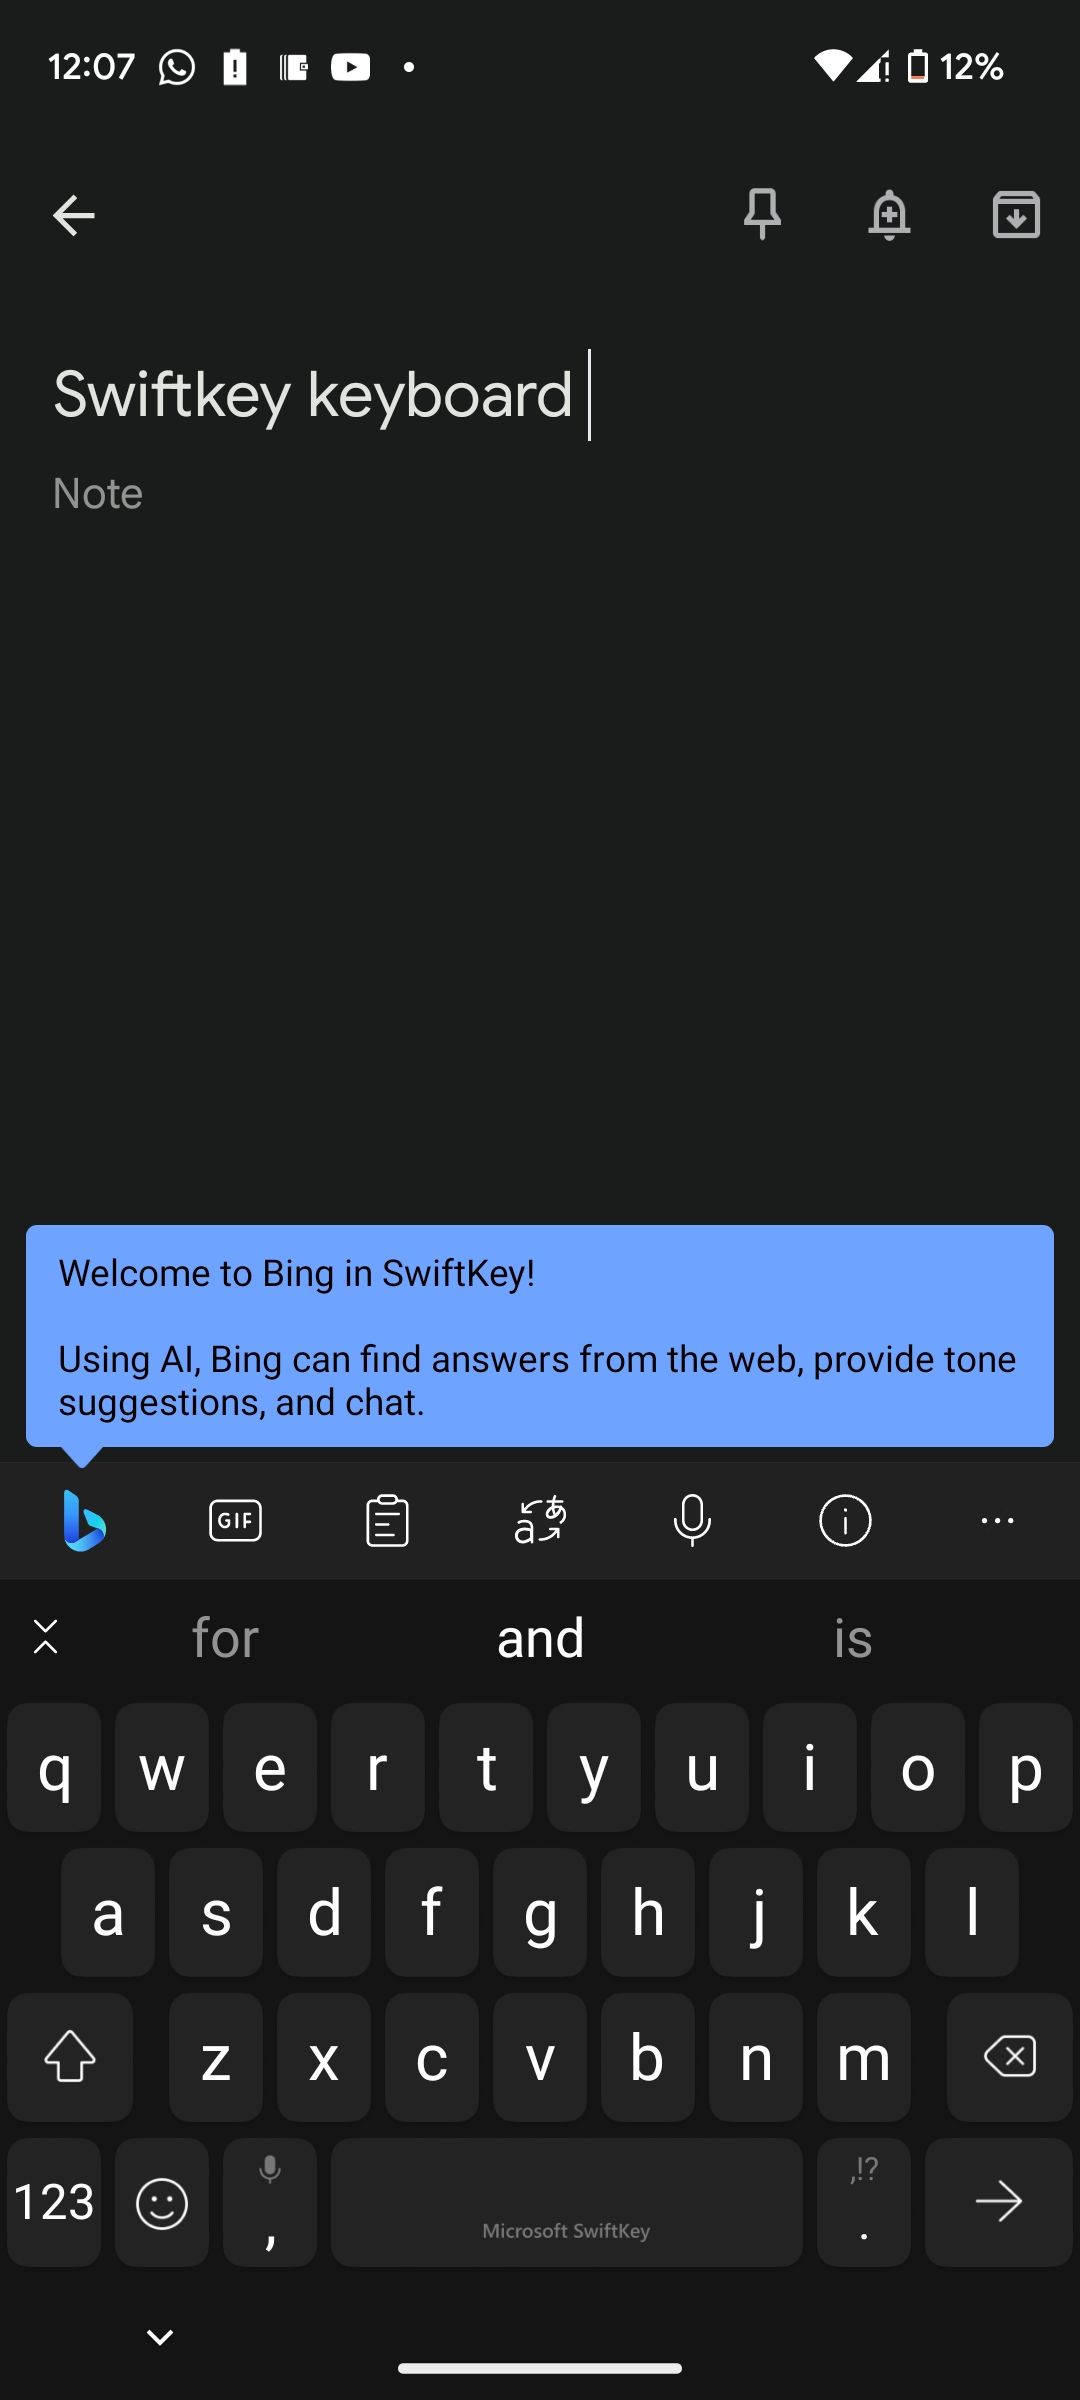 Using Swiftkey keyboard to type